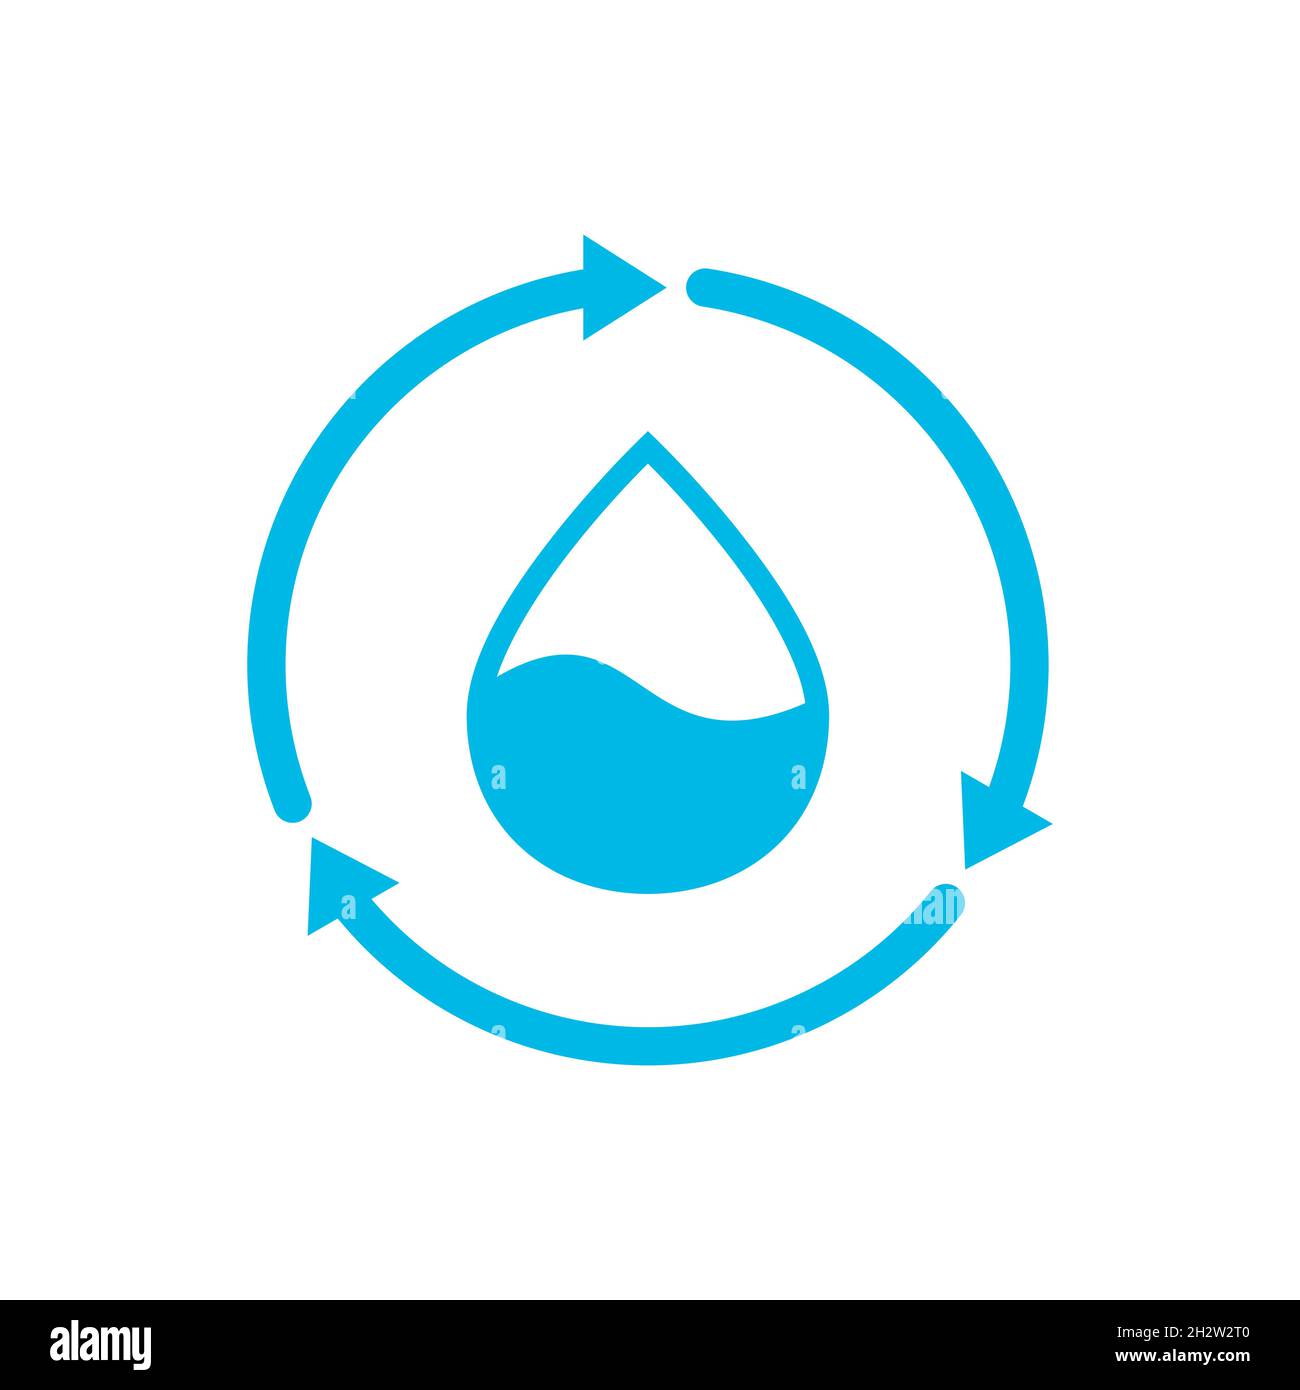 Icona dell'acqua di riciclo. Goccia d'acqua blu all'interno delle frecce circolari. Risorse sostenibili. Riutilizzo o bonifica dell'acqua. Idea di restauro ambientale. Vettore Illustrazione Vettoriale